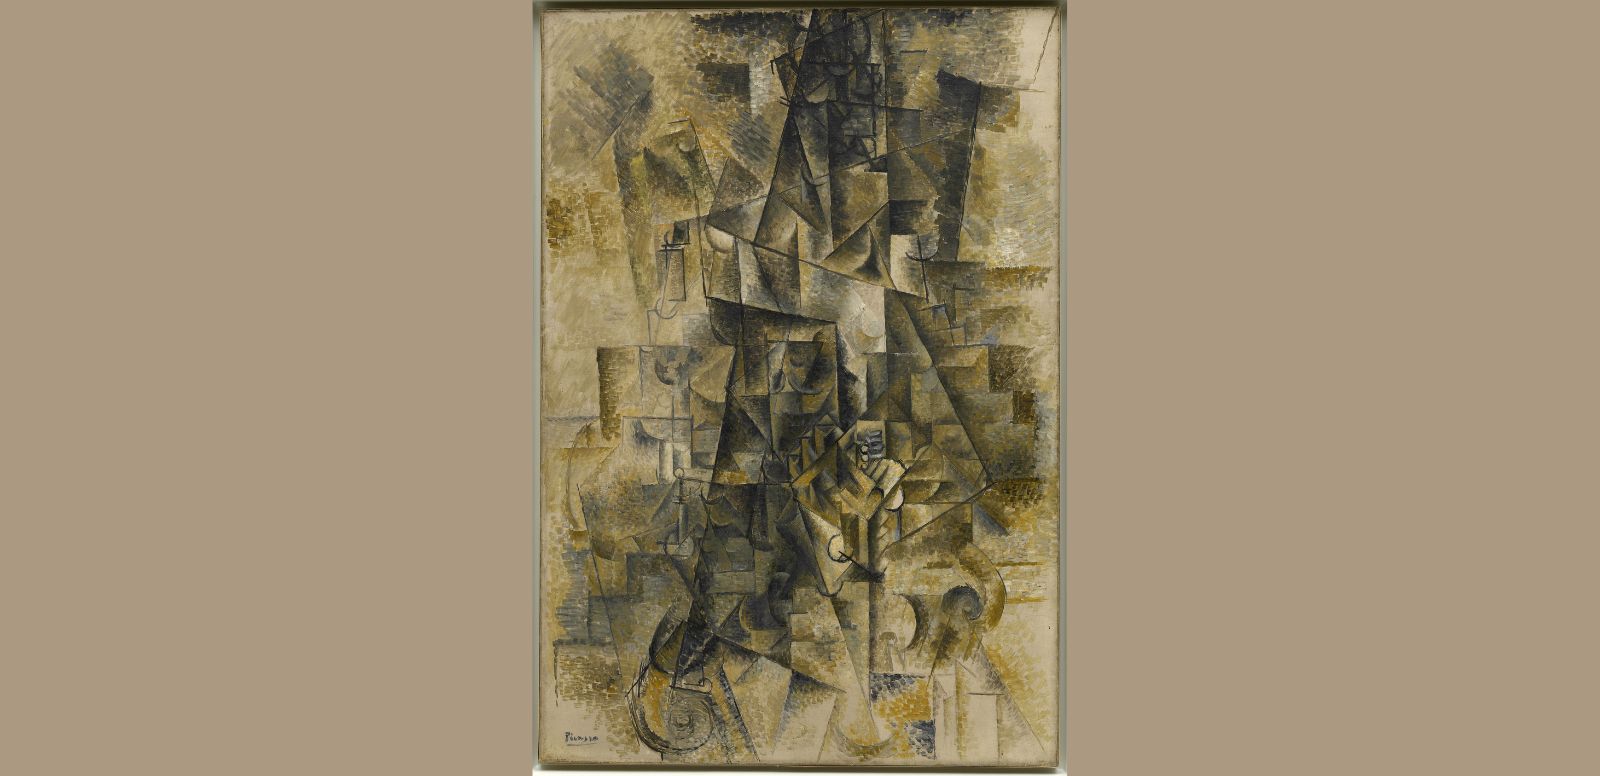 Pablo Picasso, "Acordeonista", 1911